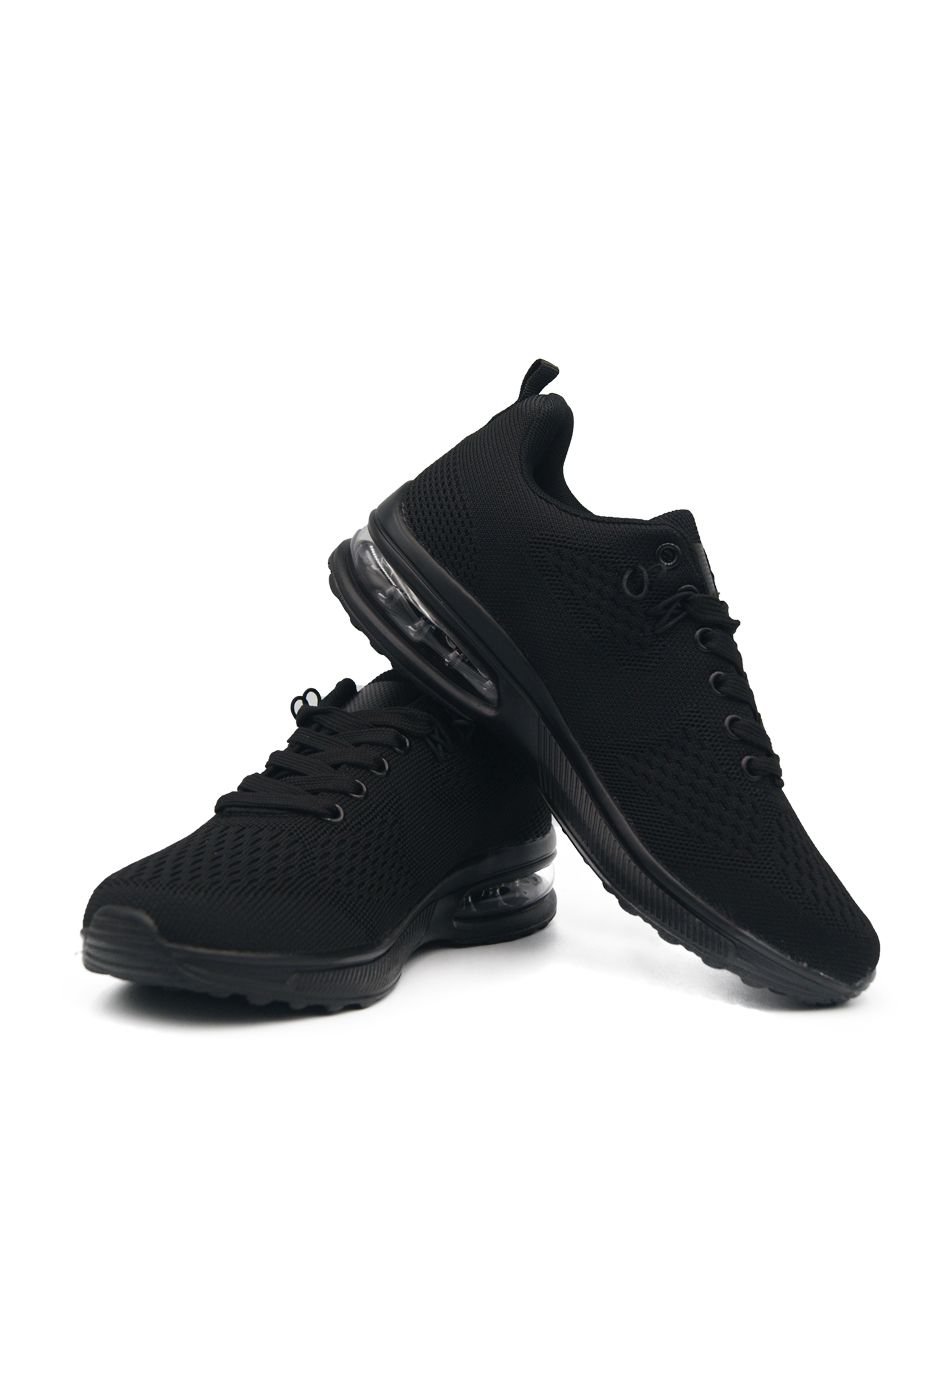 Γυναικείο Αθλητικό Sneaker με Αερόσολα Μαύρο / L-2040-black Γυναικεία Αθλητικά και Sneakers joya.gr